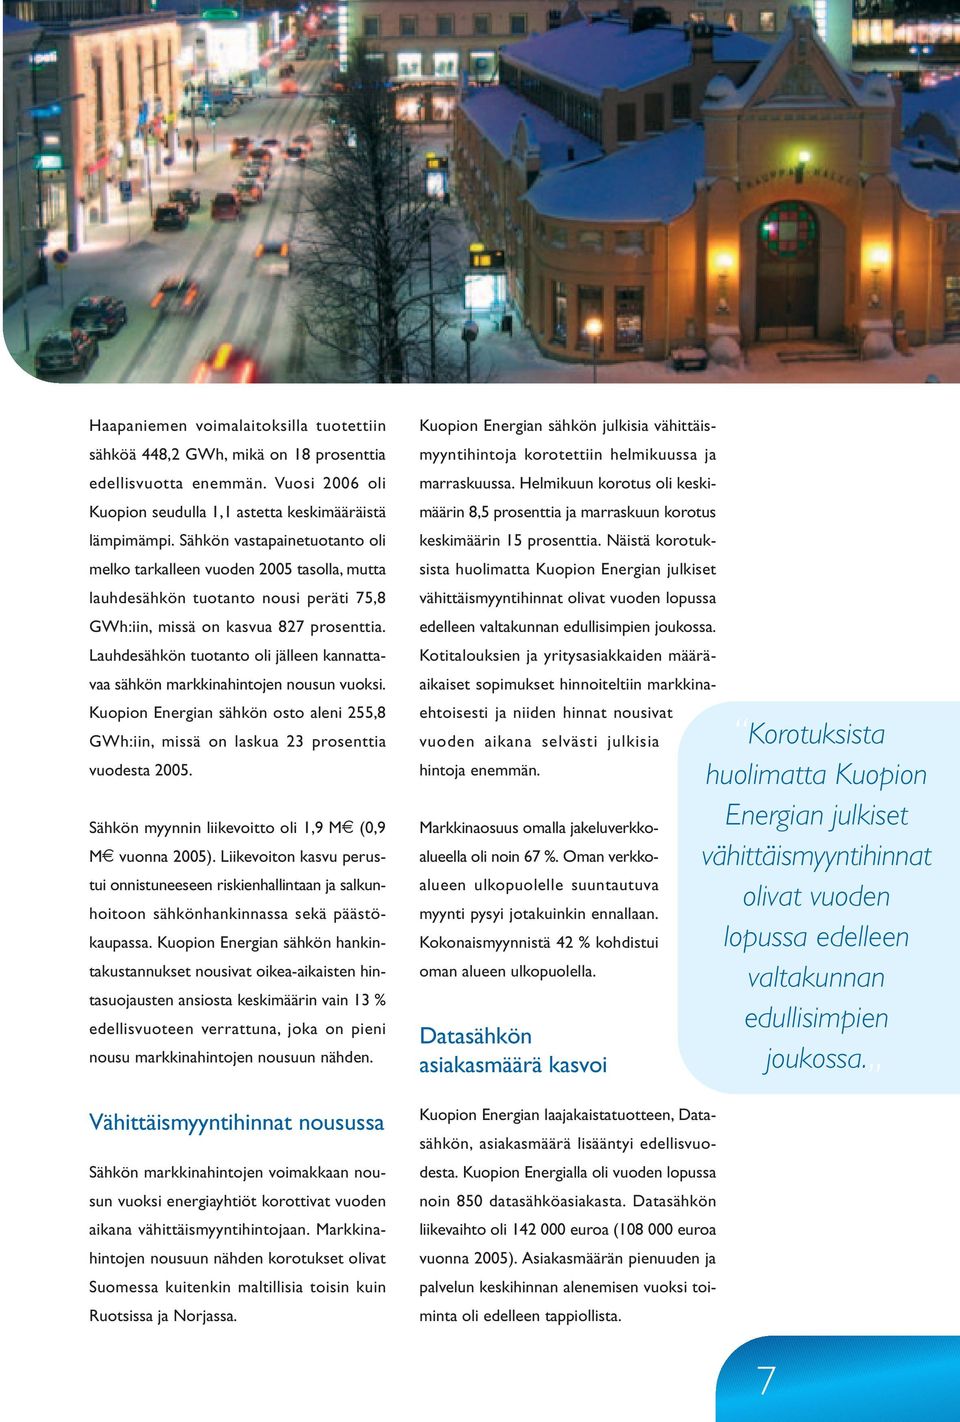 Lauhdesähkön tuotanto oli jälleen kannattavaa sähkön markkinahintojen nousun vuoksi. Kuopion Energian sähkön osto aleni 255,8 GWh:iin, missä on laskua 23 prosenttia vuodesta 2005.